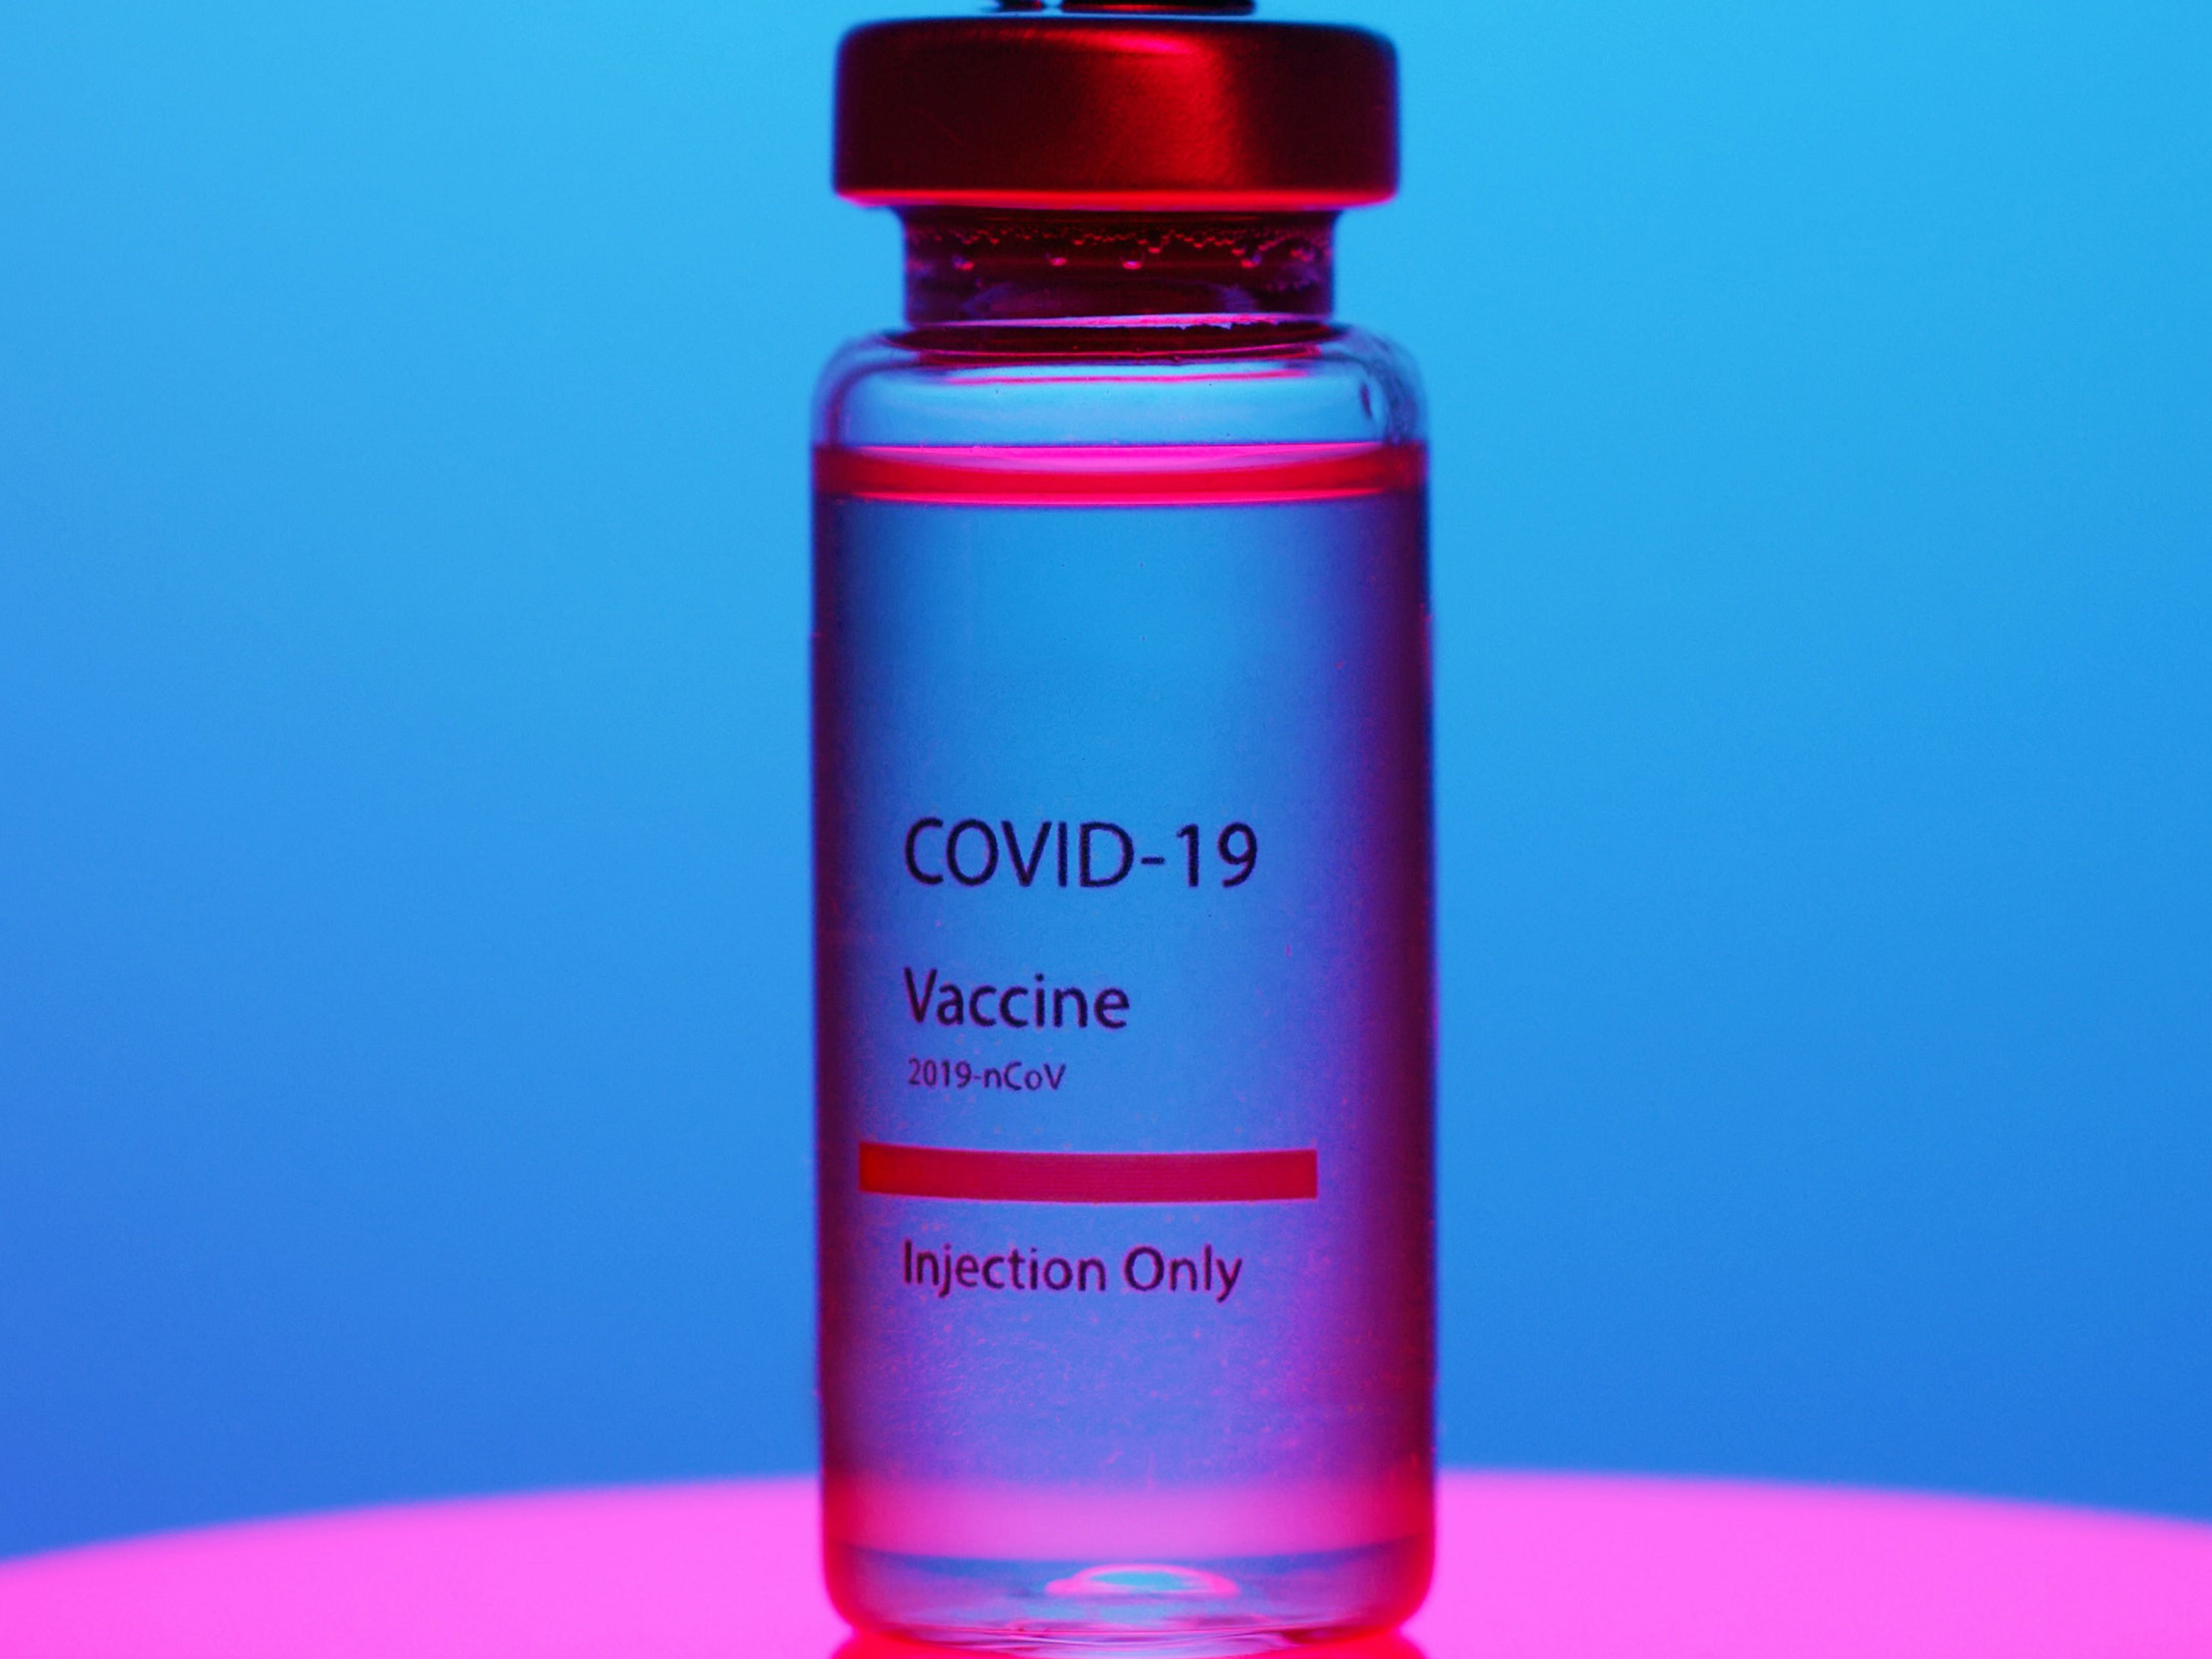 Μπορείς να γυμναστείς μετά το εμβόλιο κατά του Covid-19;